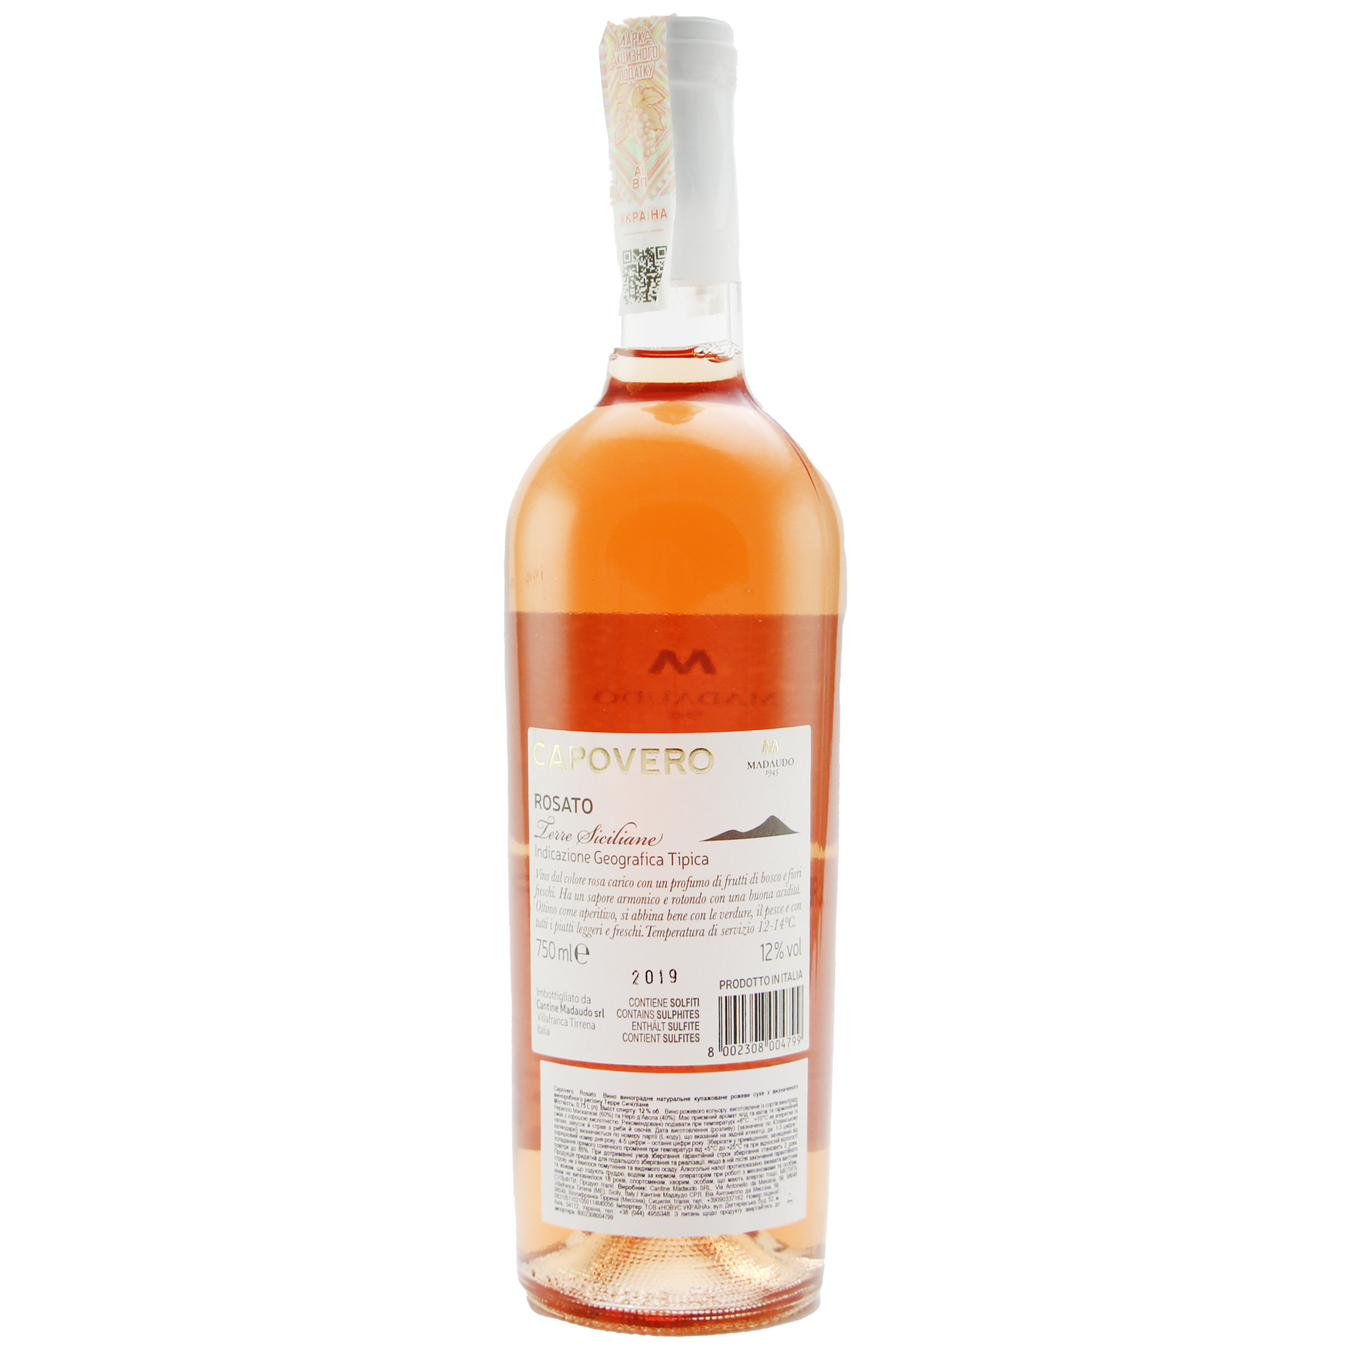 Capovero Rosato Rose Dry Wine 12,5% 0,75l 2